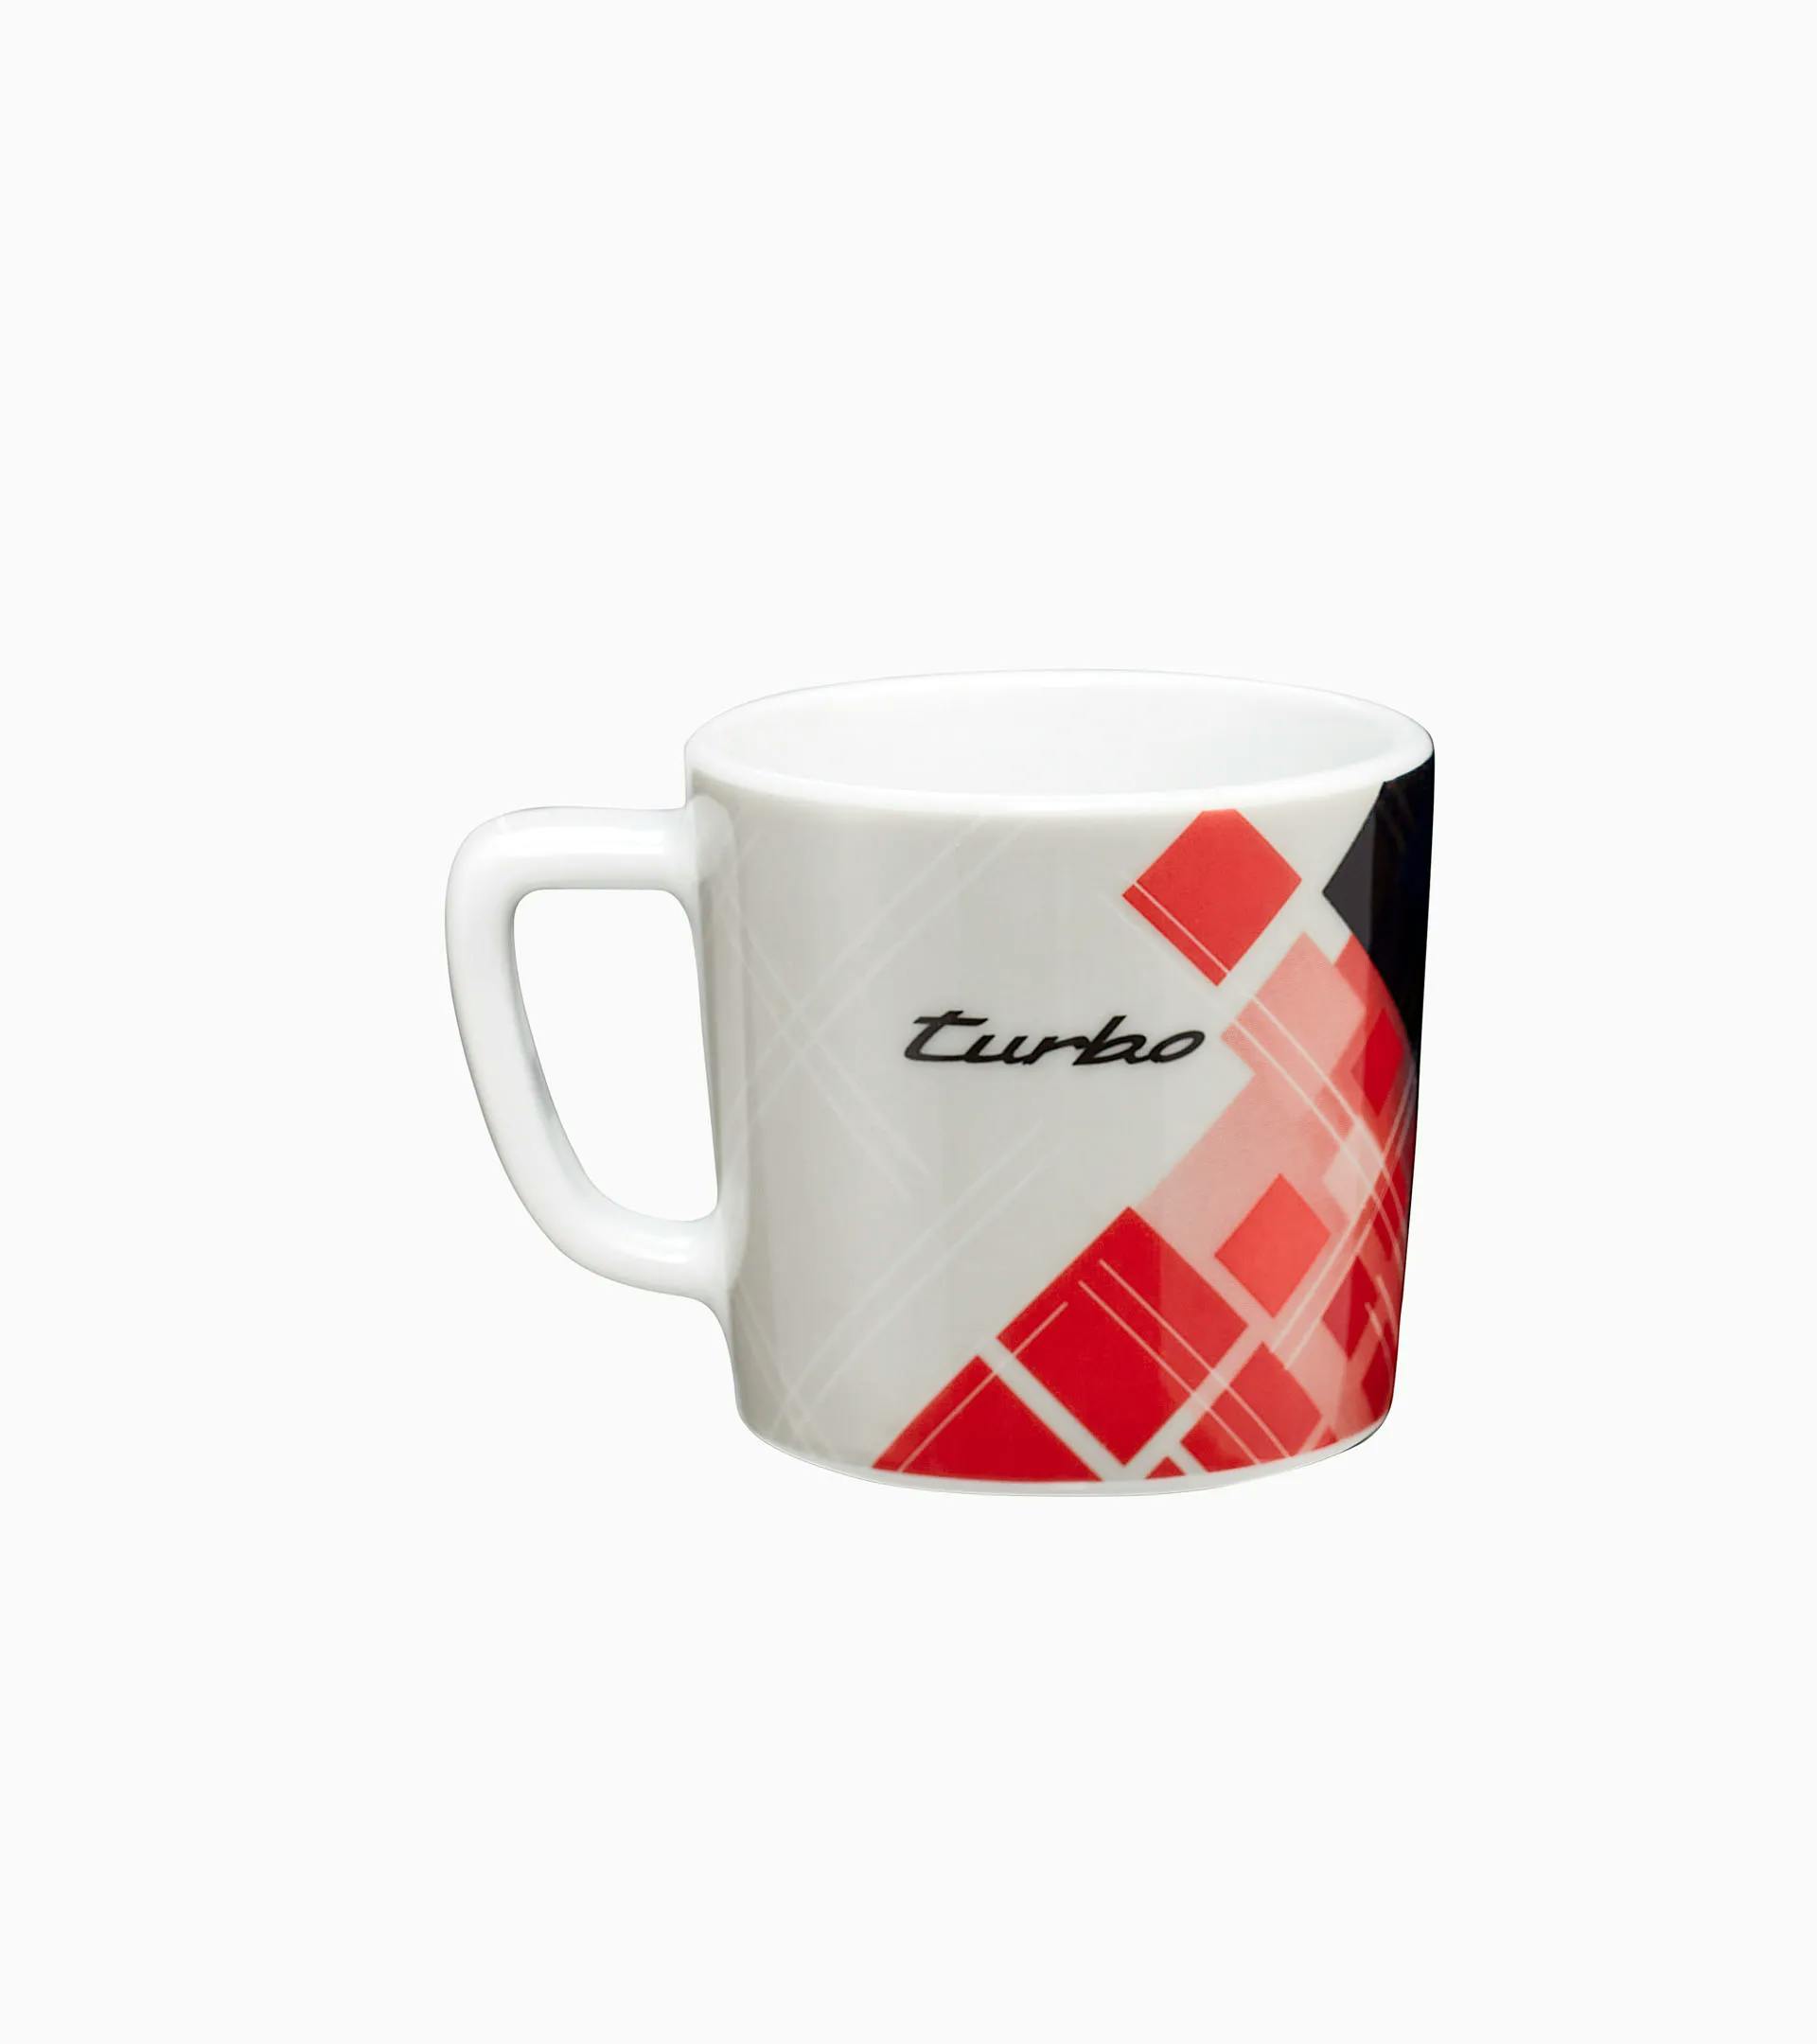 Porsche Collector's Espresso Cup No. 6 - Turbo No. 1